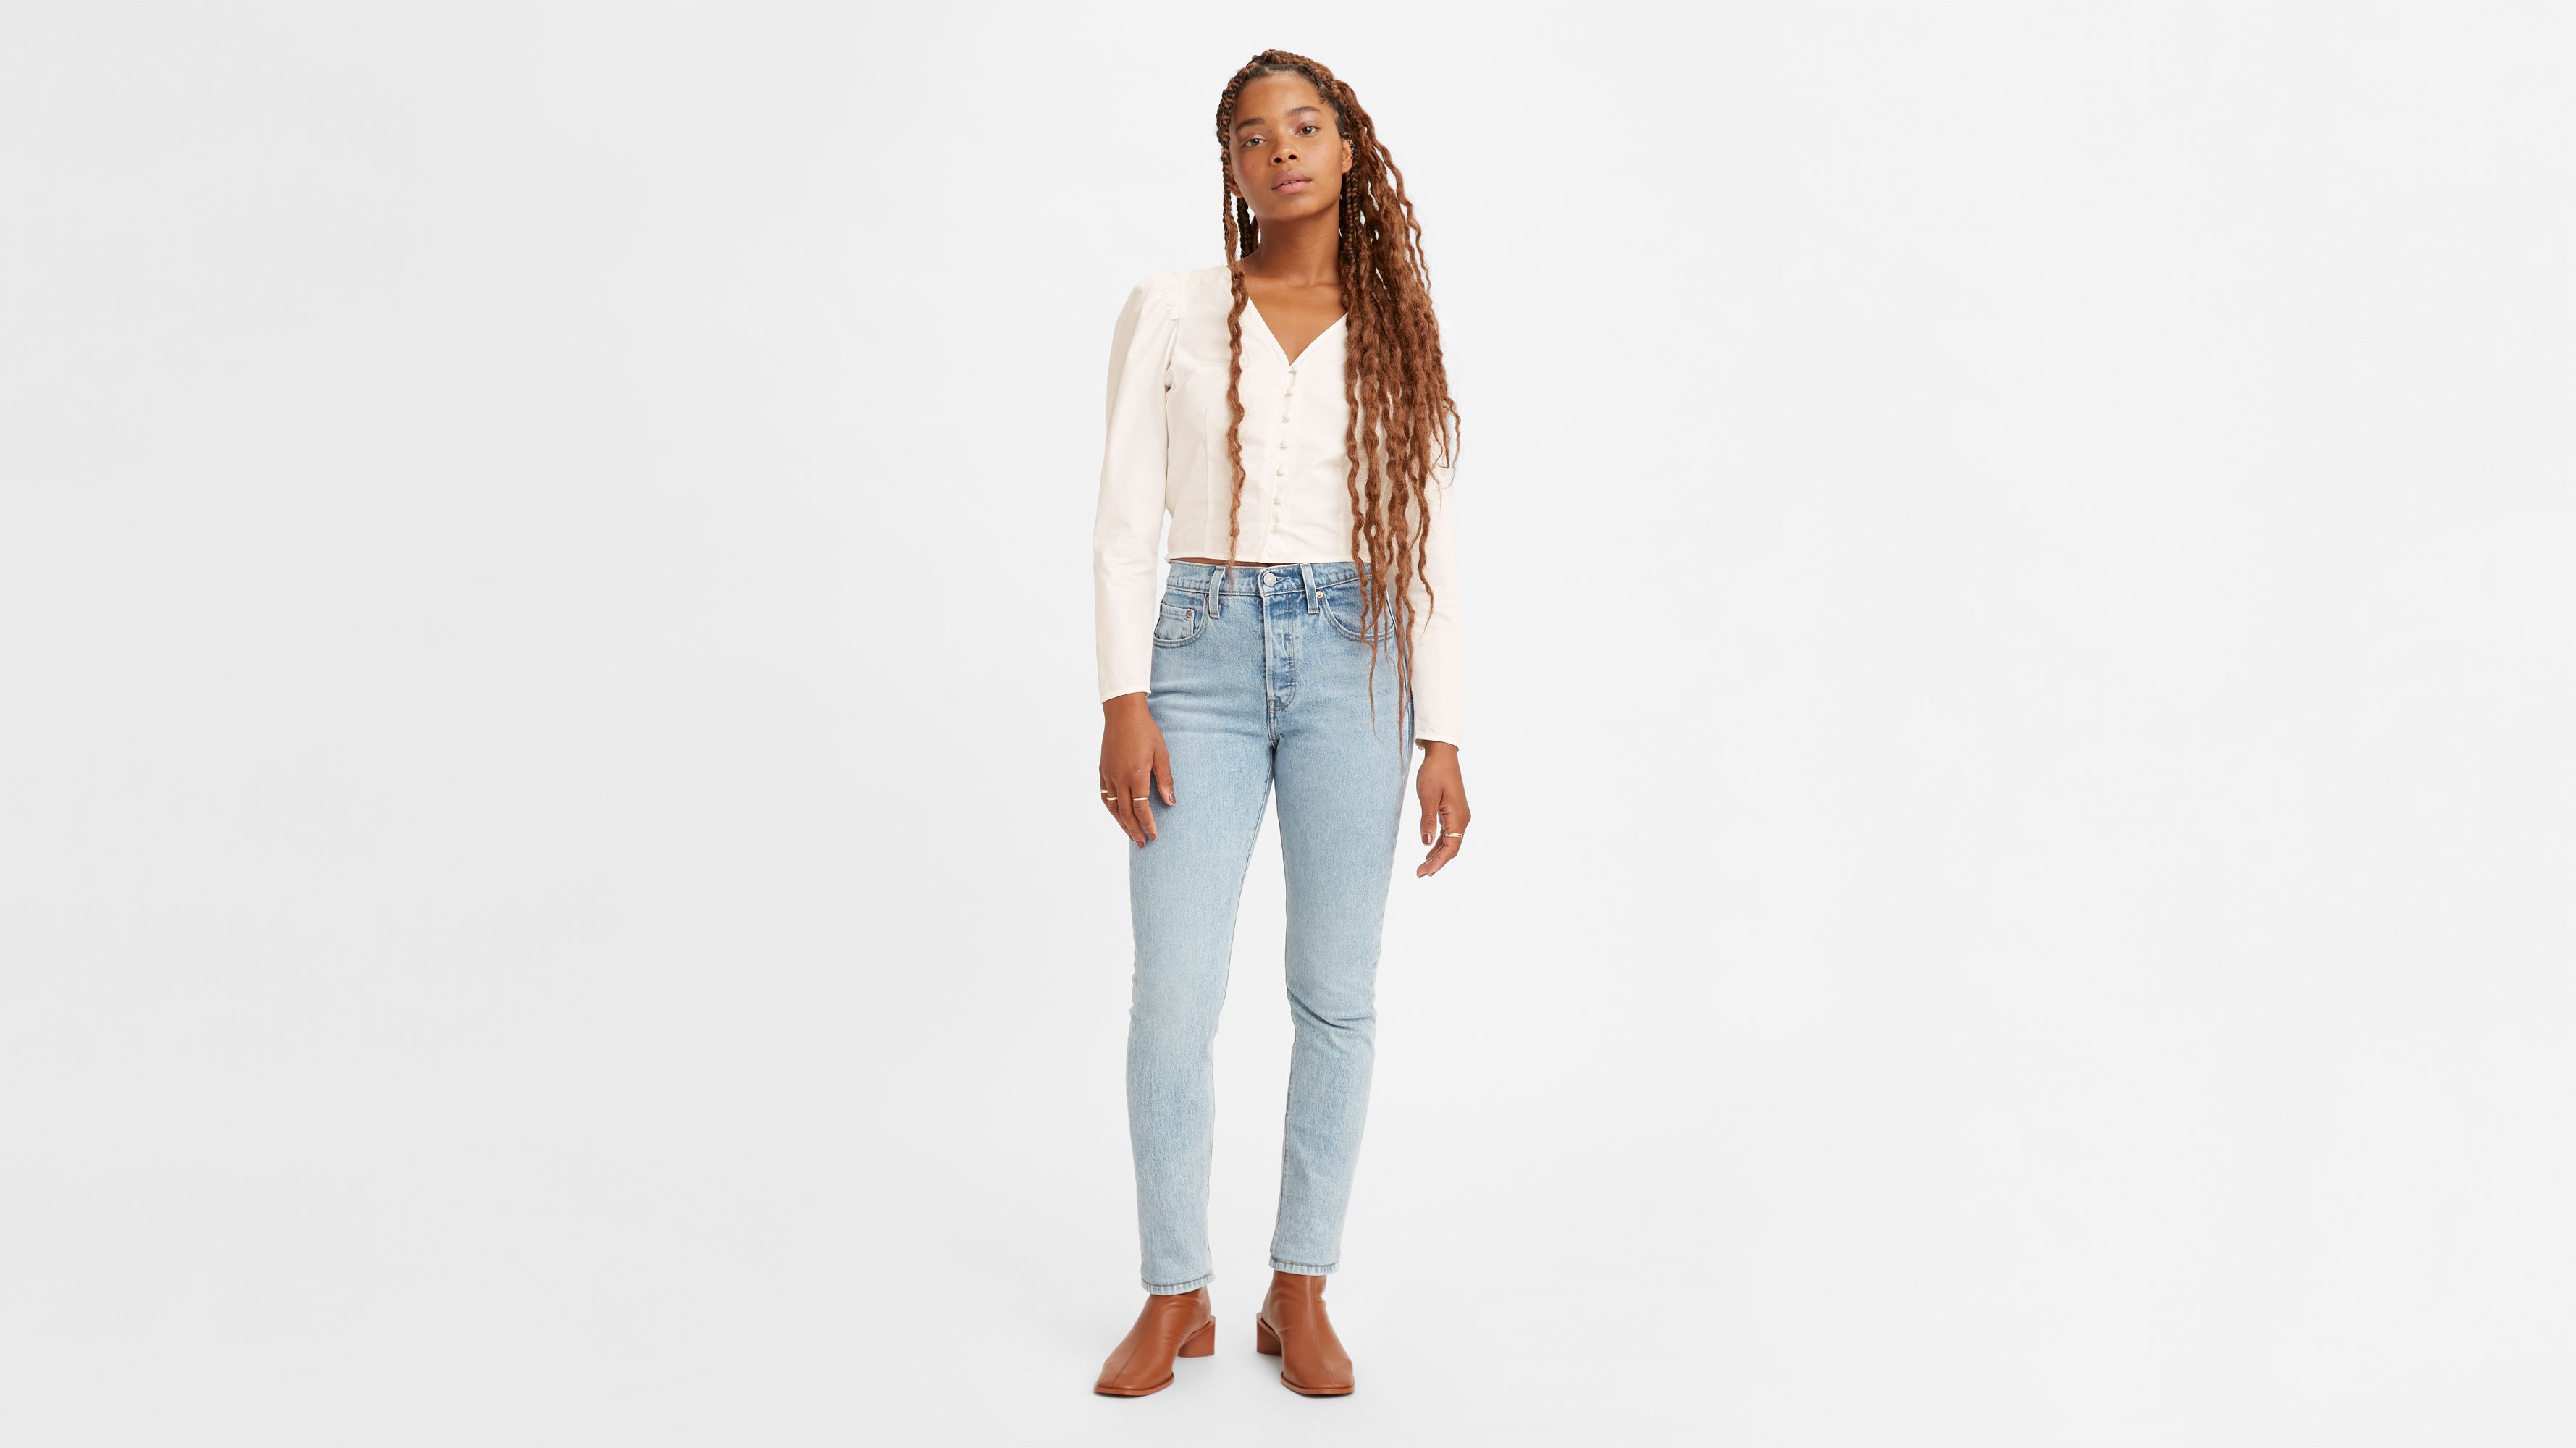 501® Skinny Women's Jeans